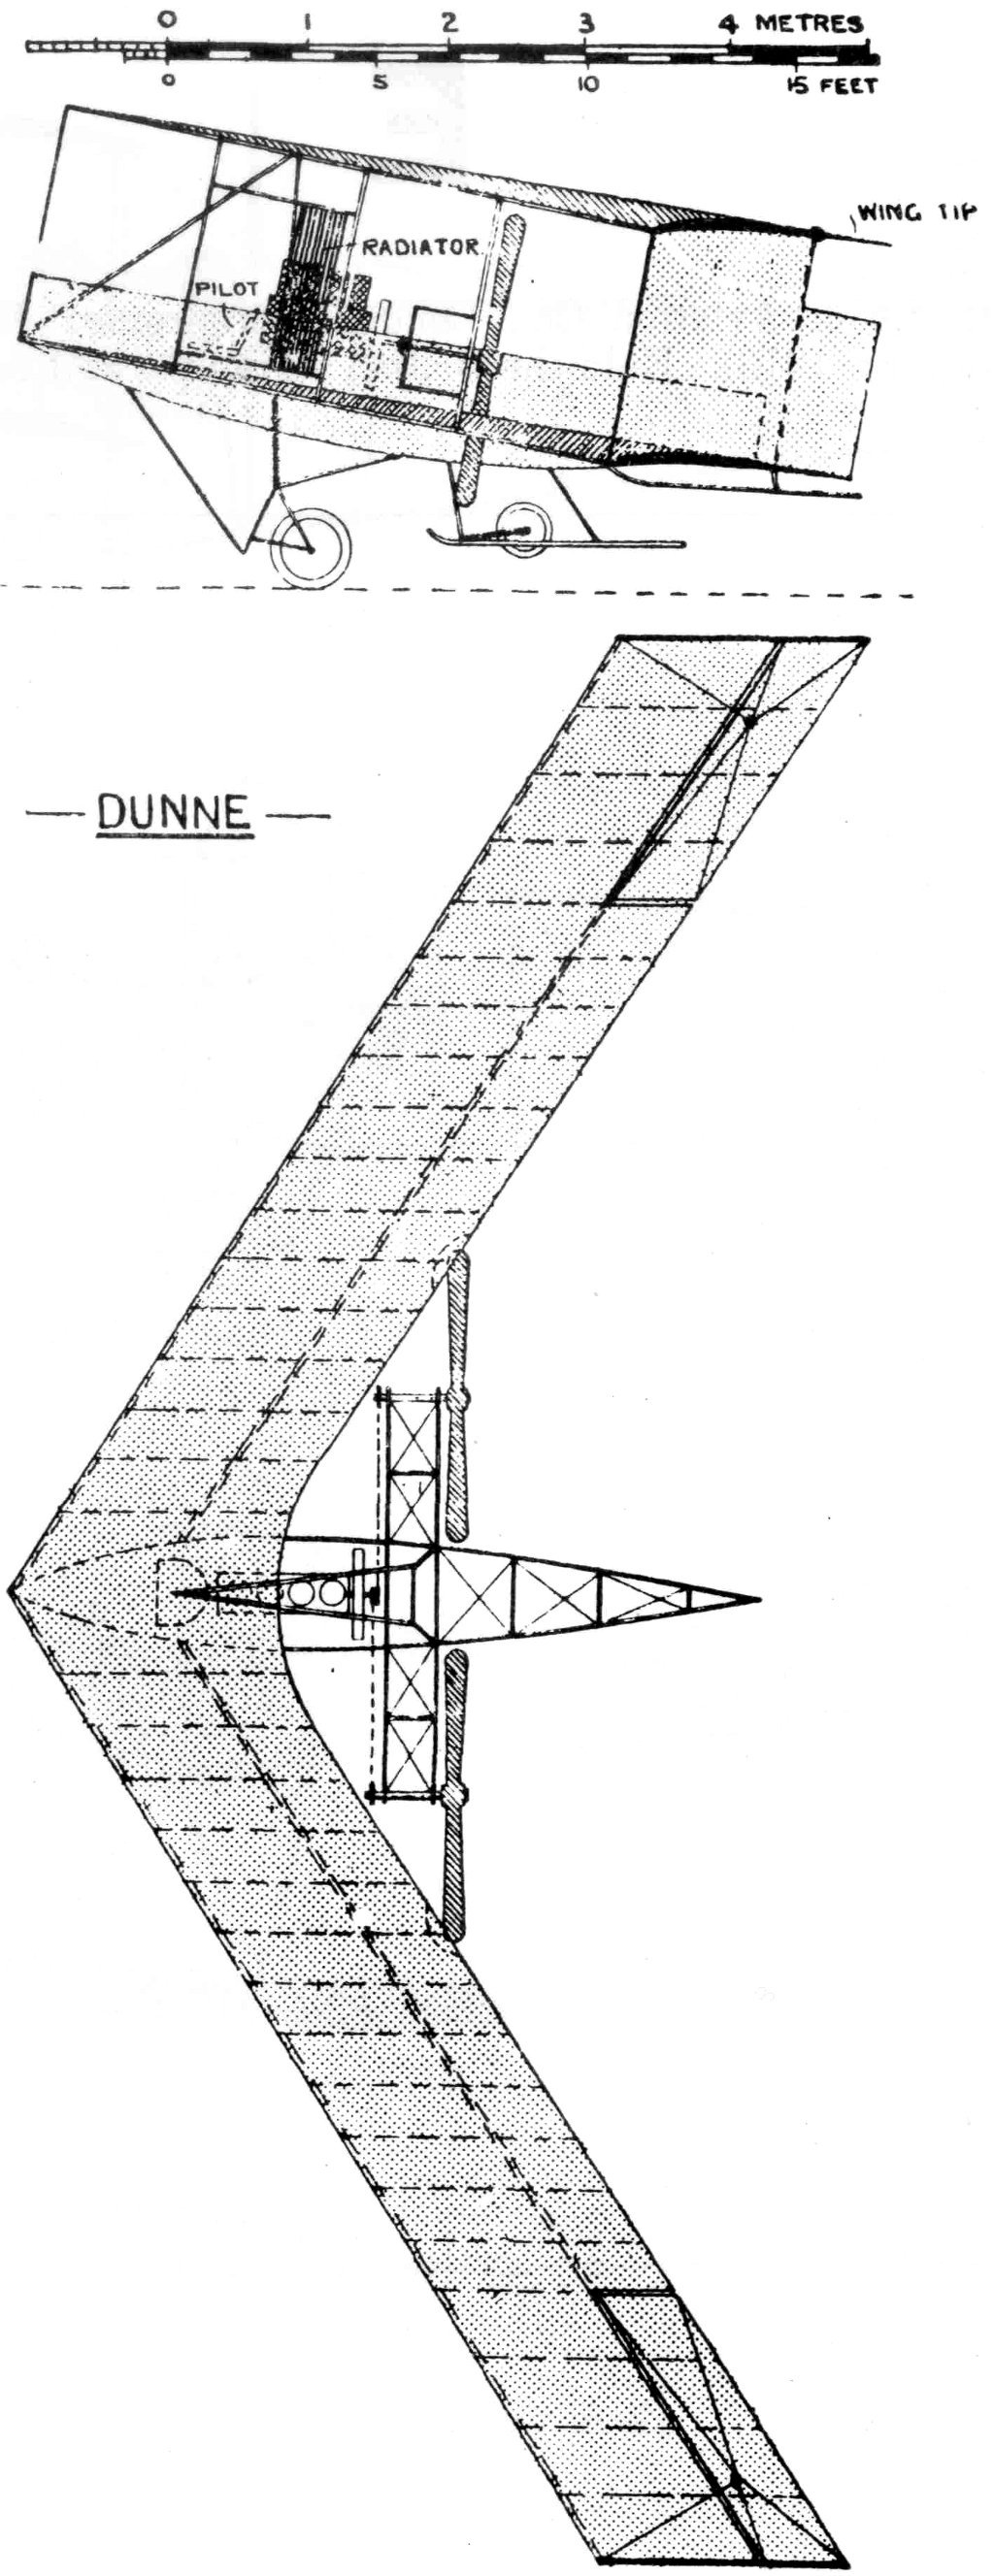 DUNNE. Original Dunne biplane D5.